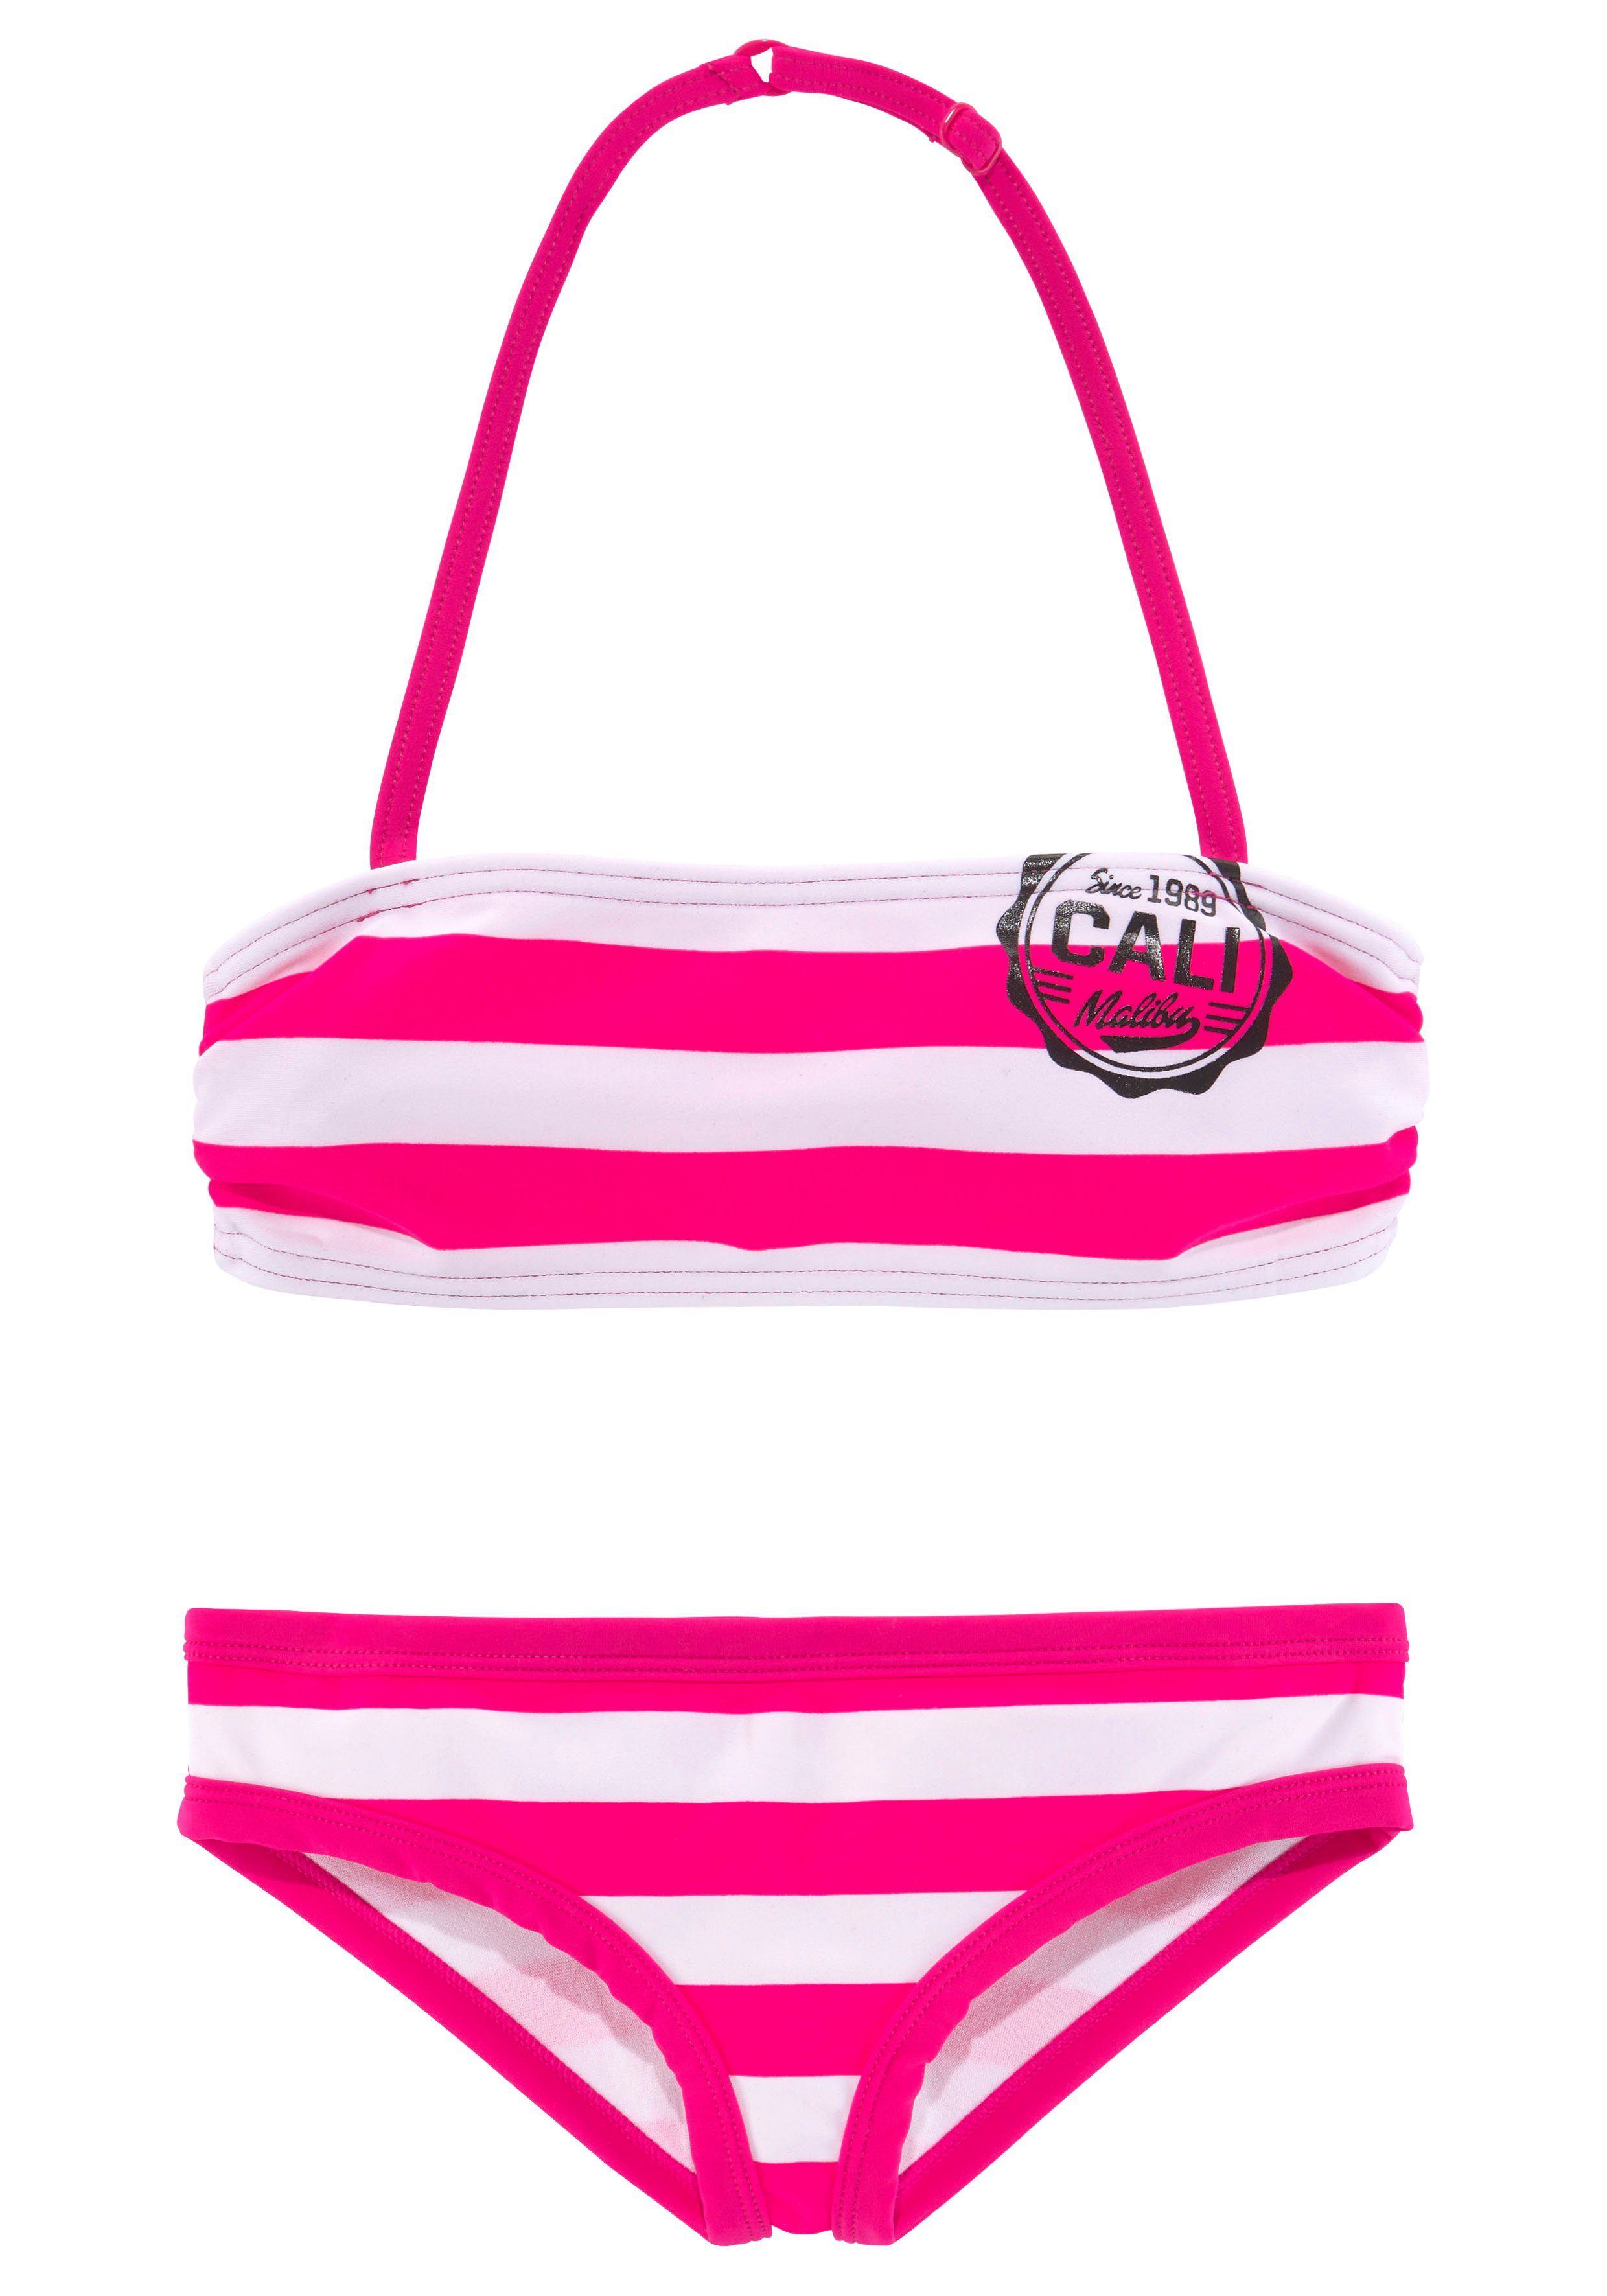 Bandeau-Bikini pink-weiß Streifen mit trendigen Bench.